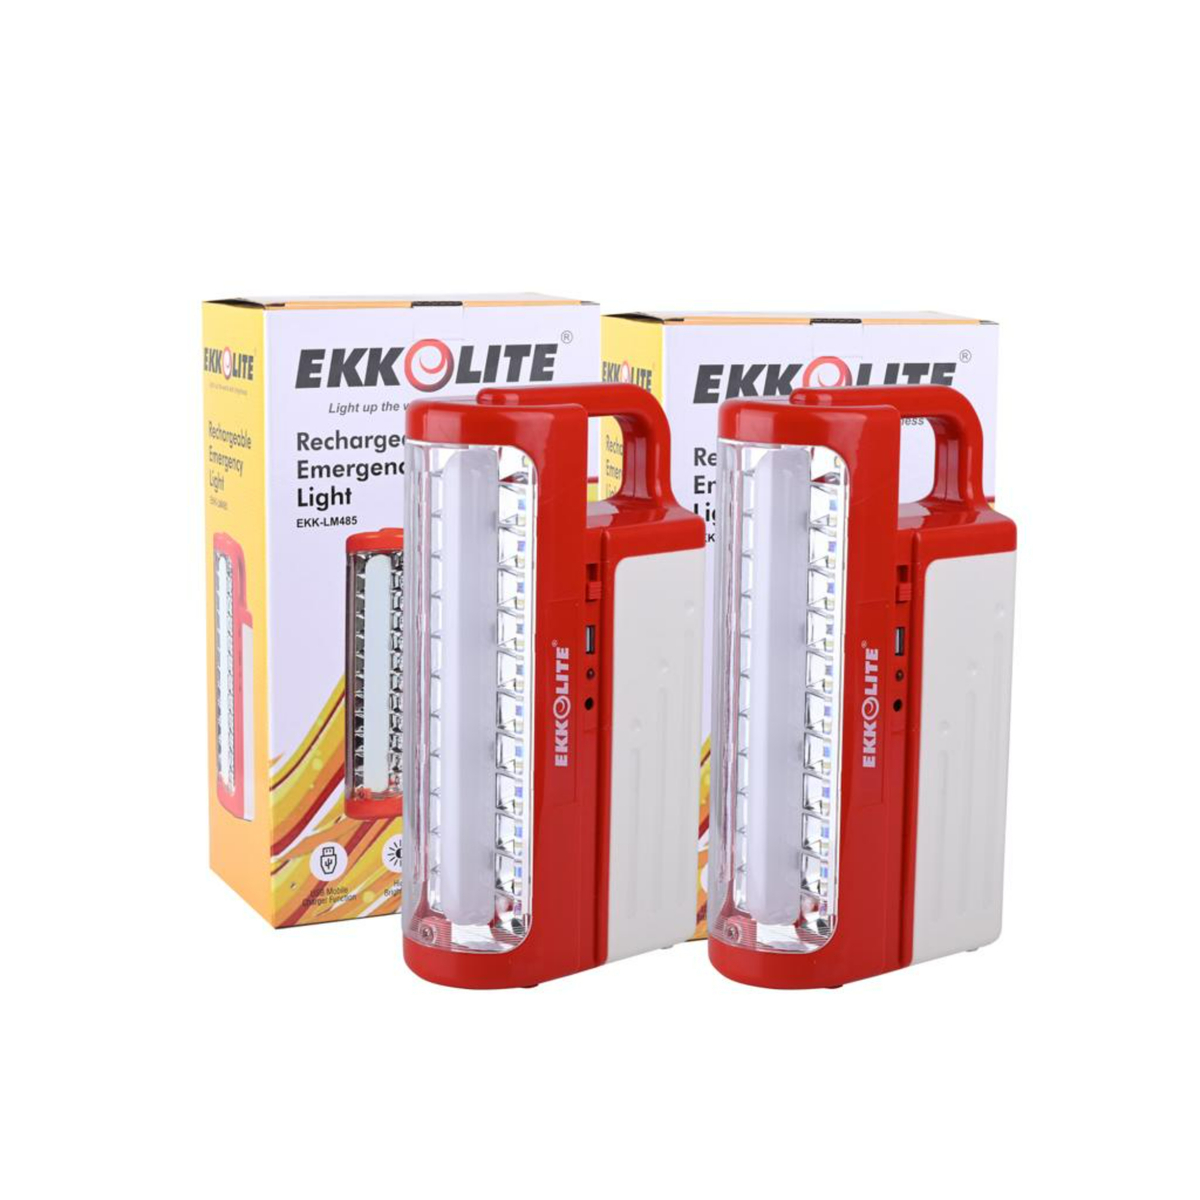 Ekkolite Rechargeable Emergency Light, 2 Pcs, EKK-LM485